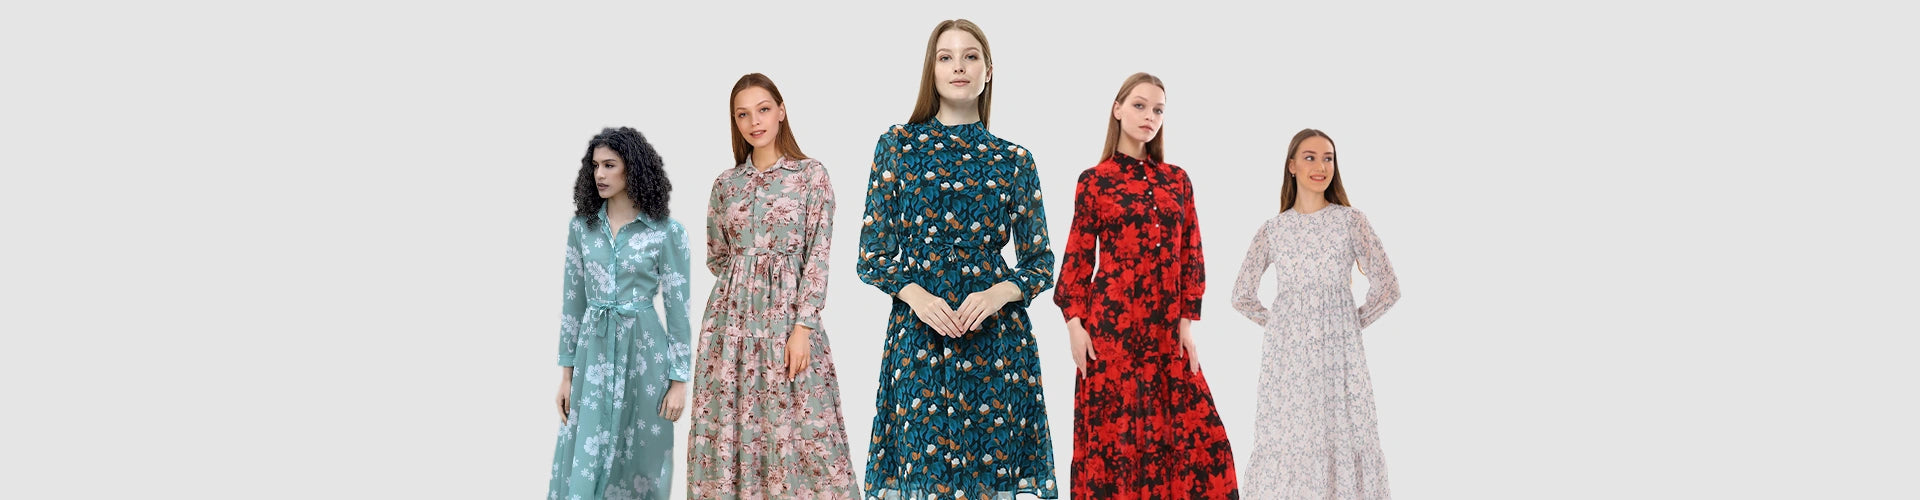 spring floral dresses